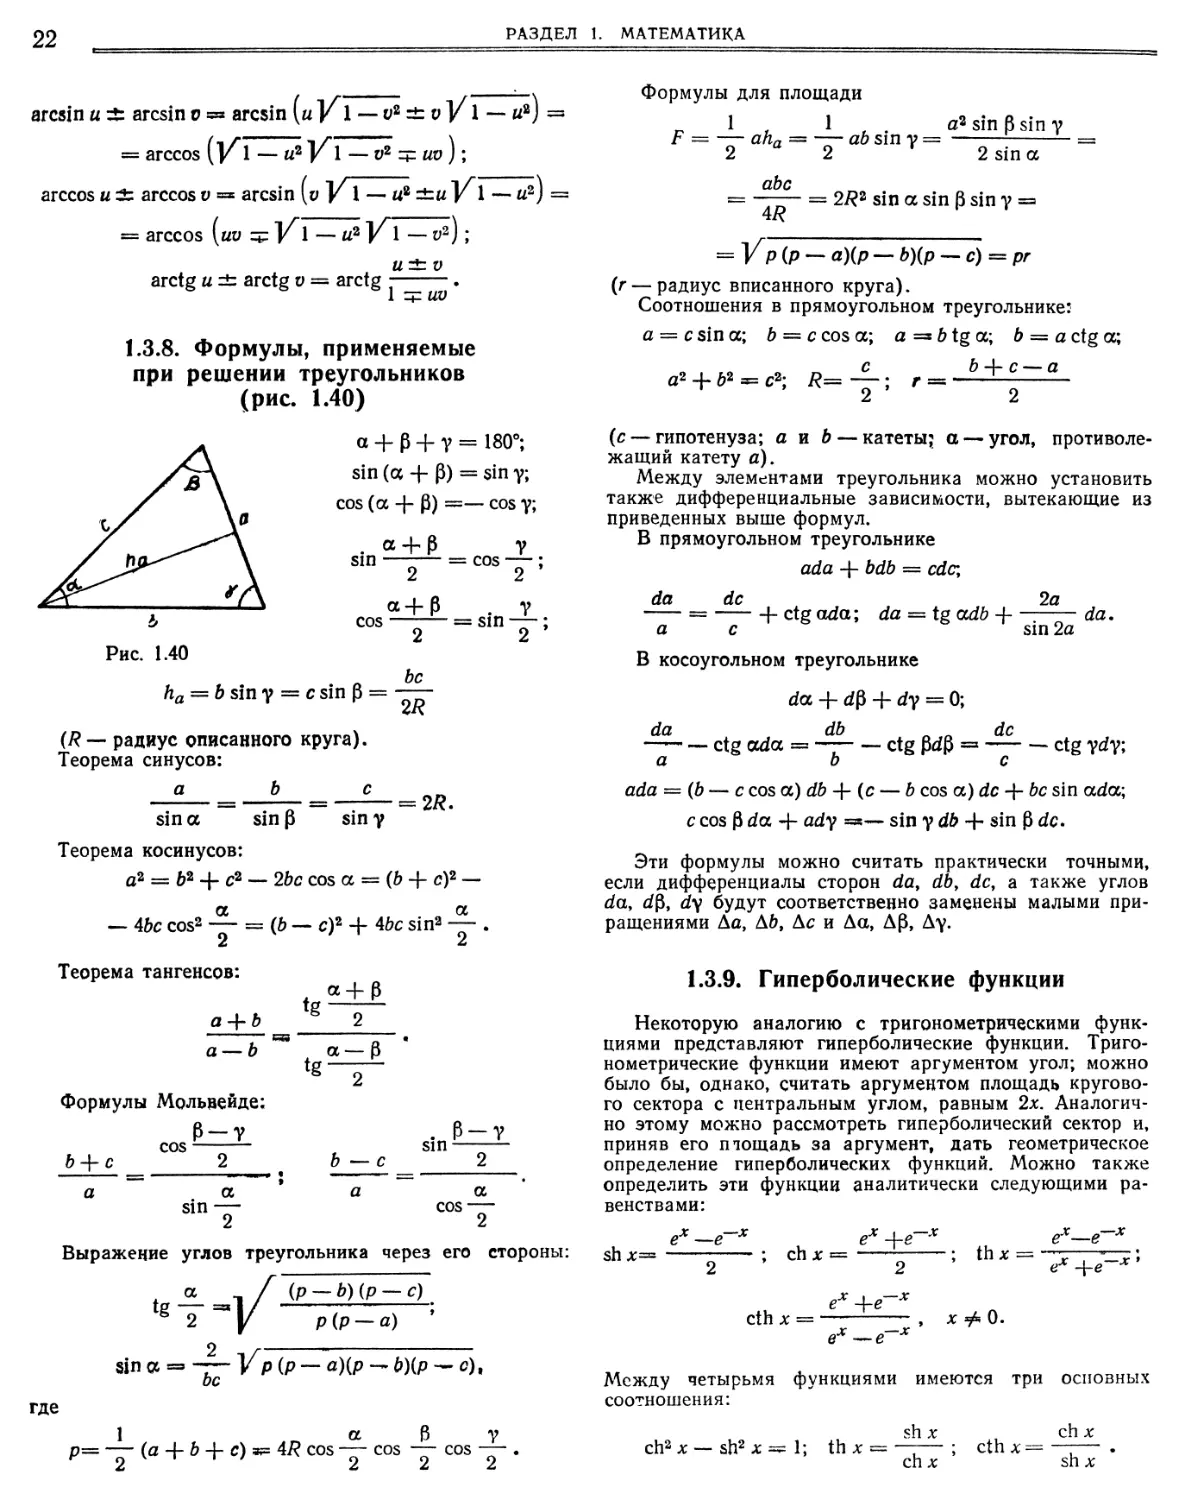 1.3.8. Формулы, применяемые при решении треугольников
1.3.9. Гиперболические функции